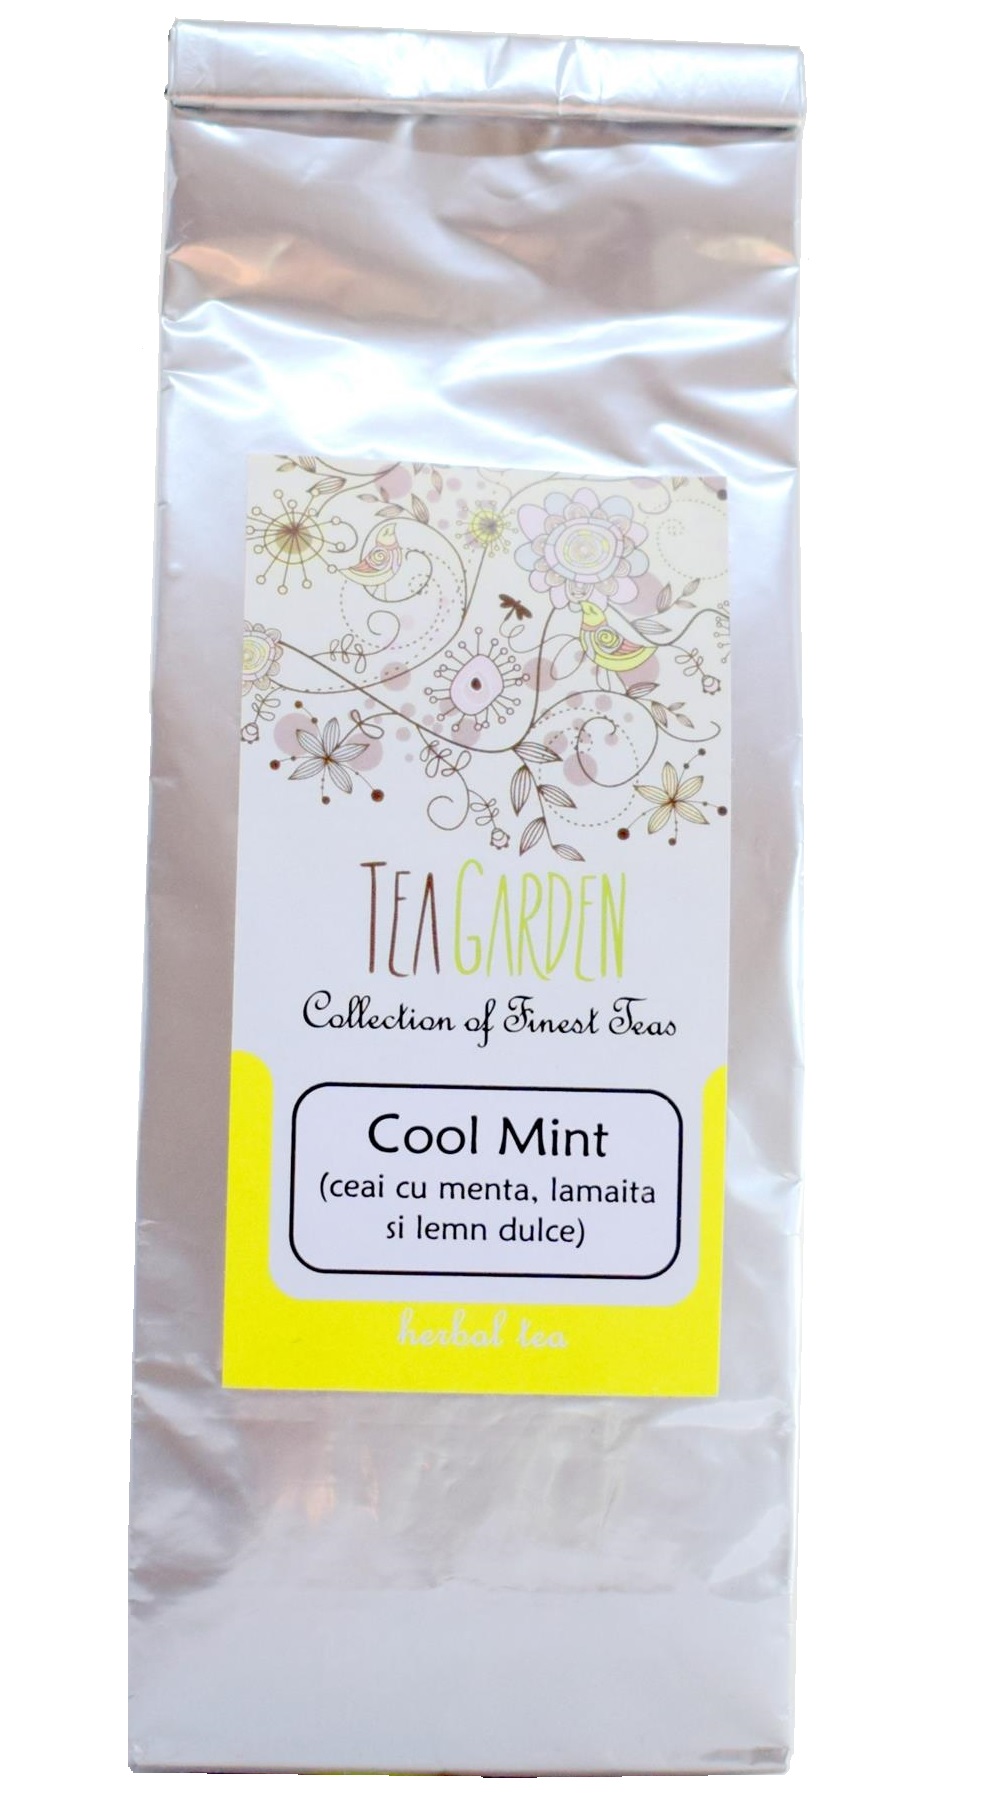 Ceai Cool Mint